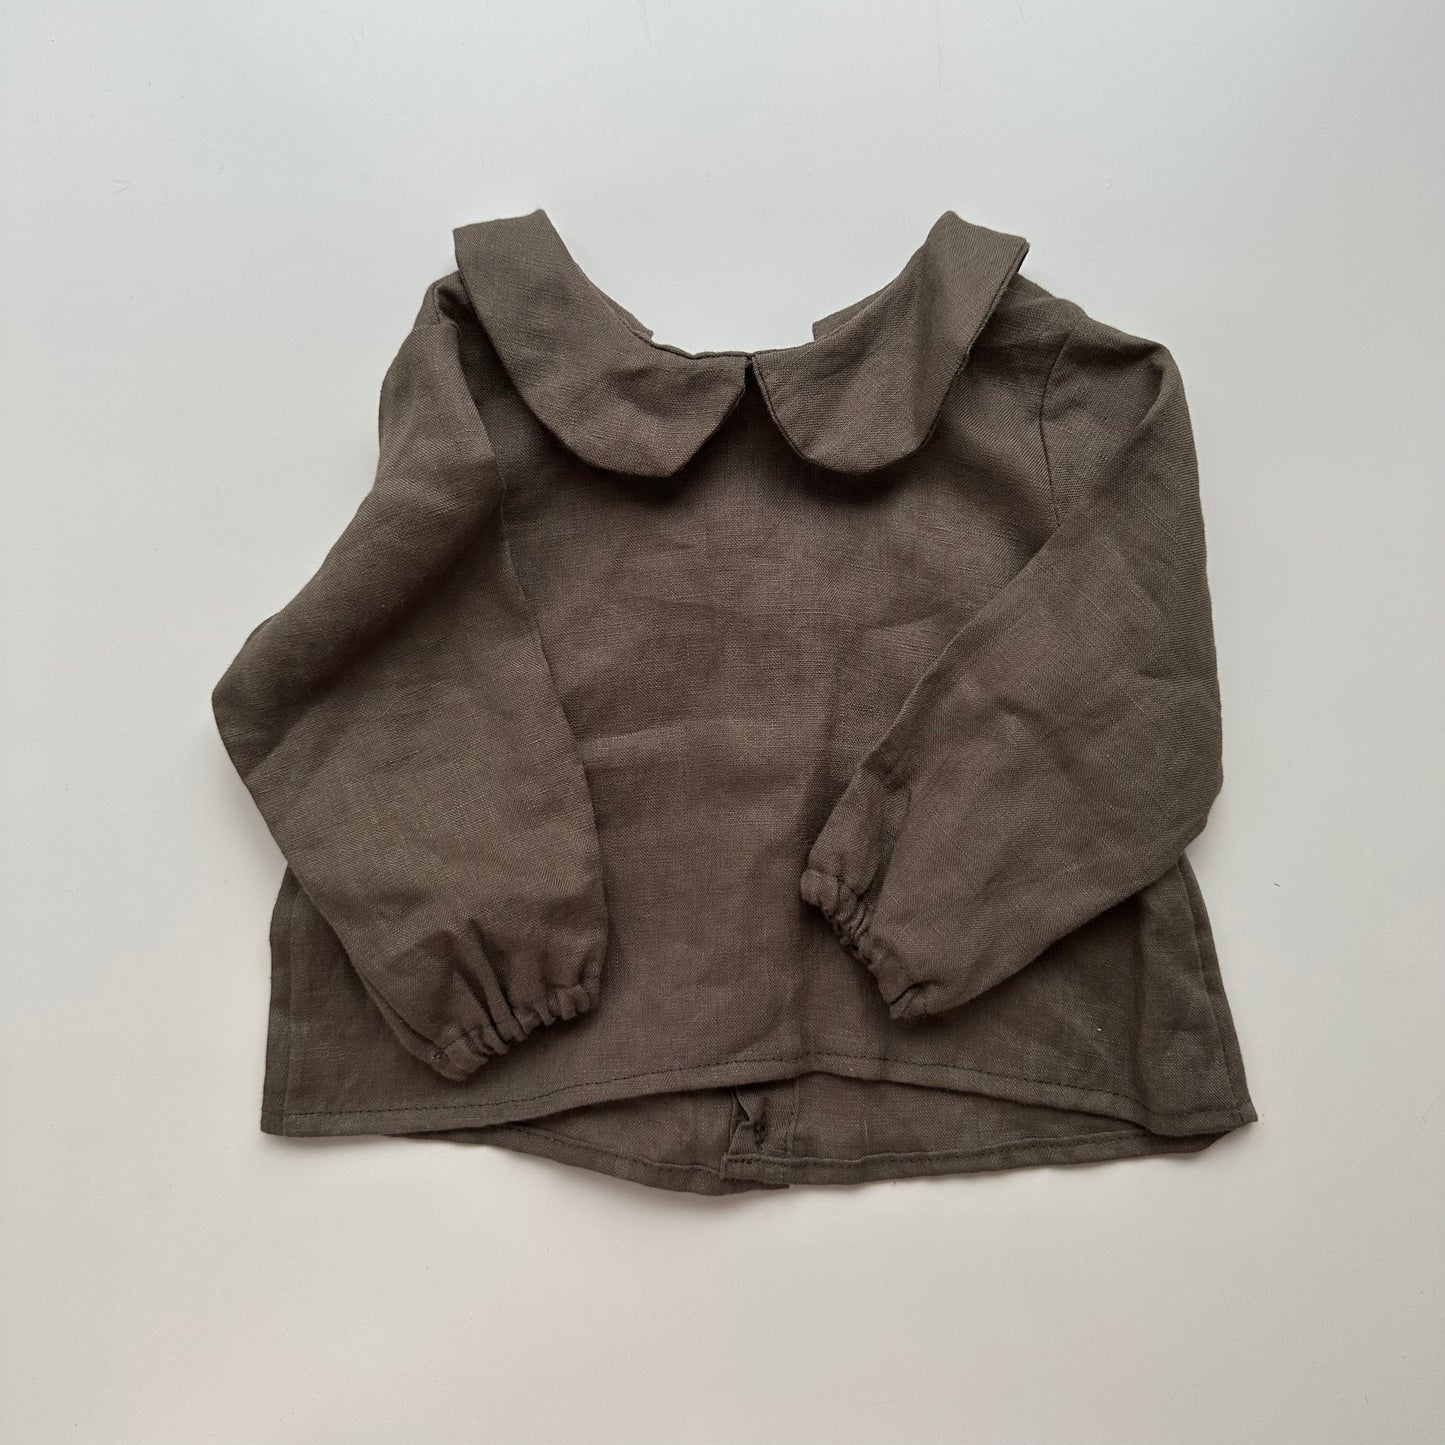 Little Deer Handmade Shirt - 3-6 months - Closet Sale 066